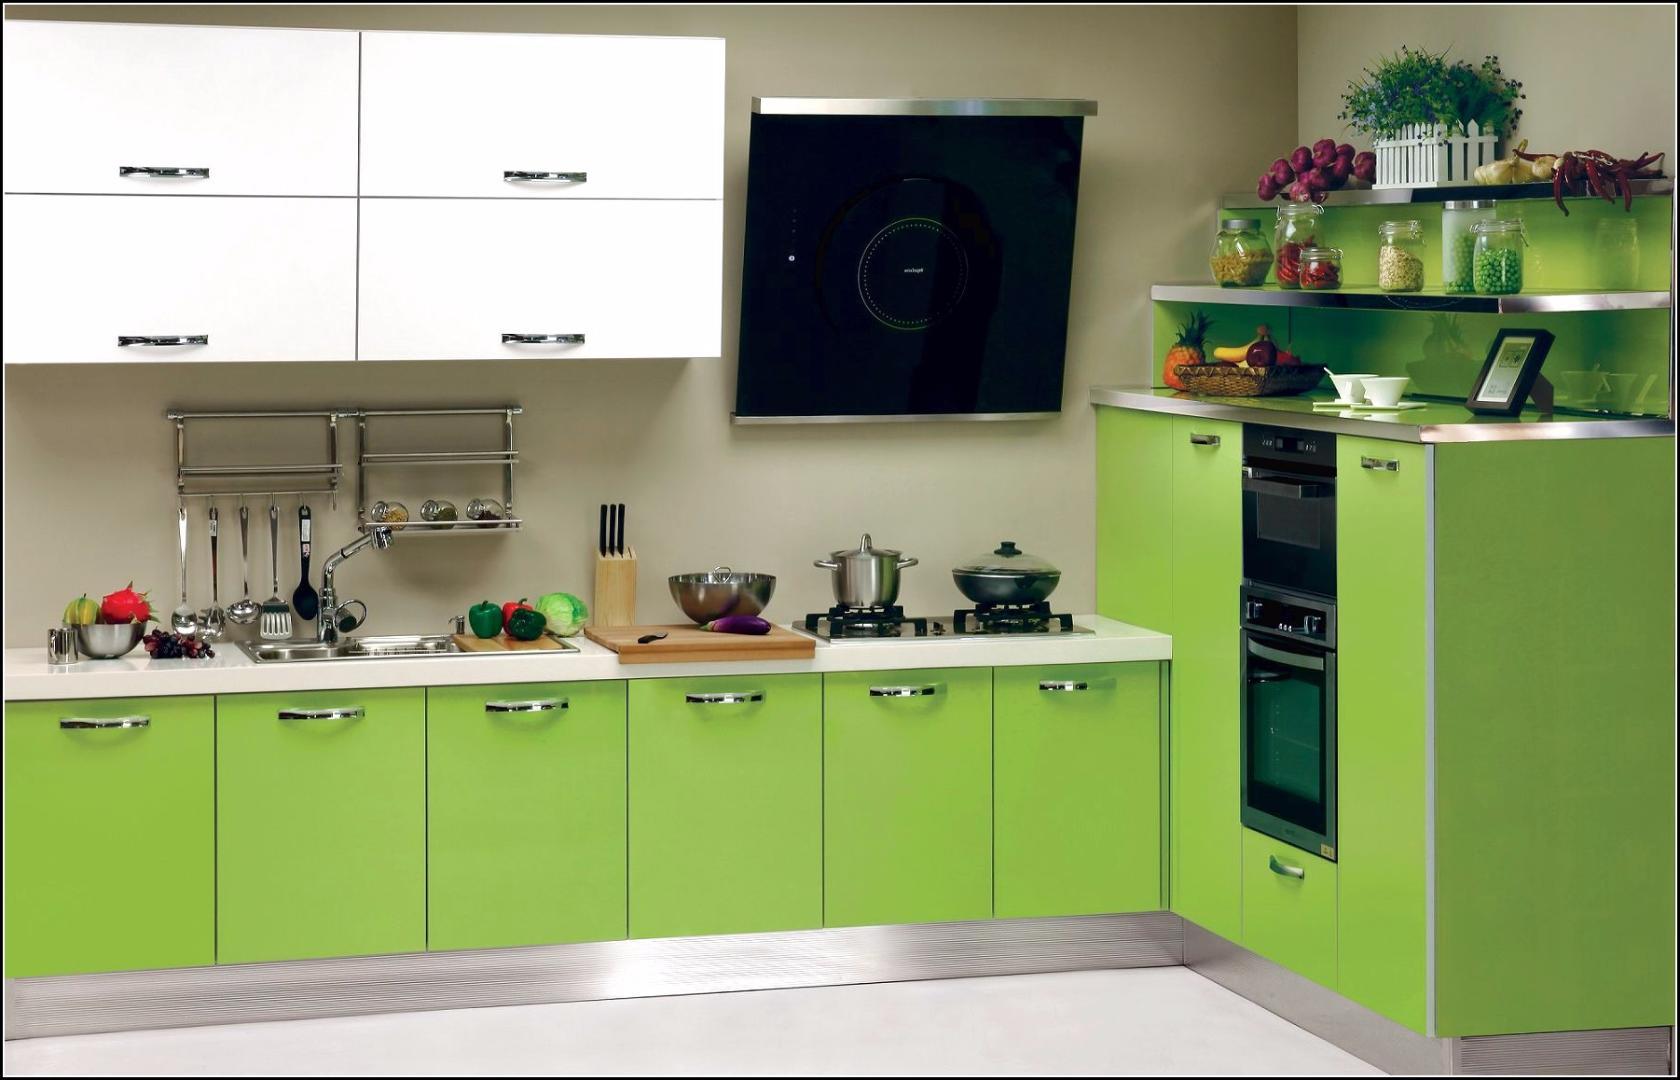 Дизайн кухни фисташкового цвета: особенности оформления, фото примеры с описанием